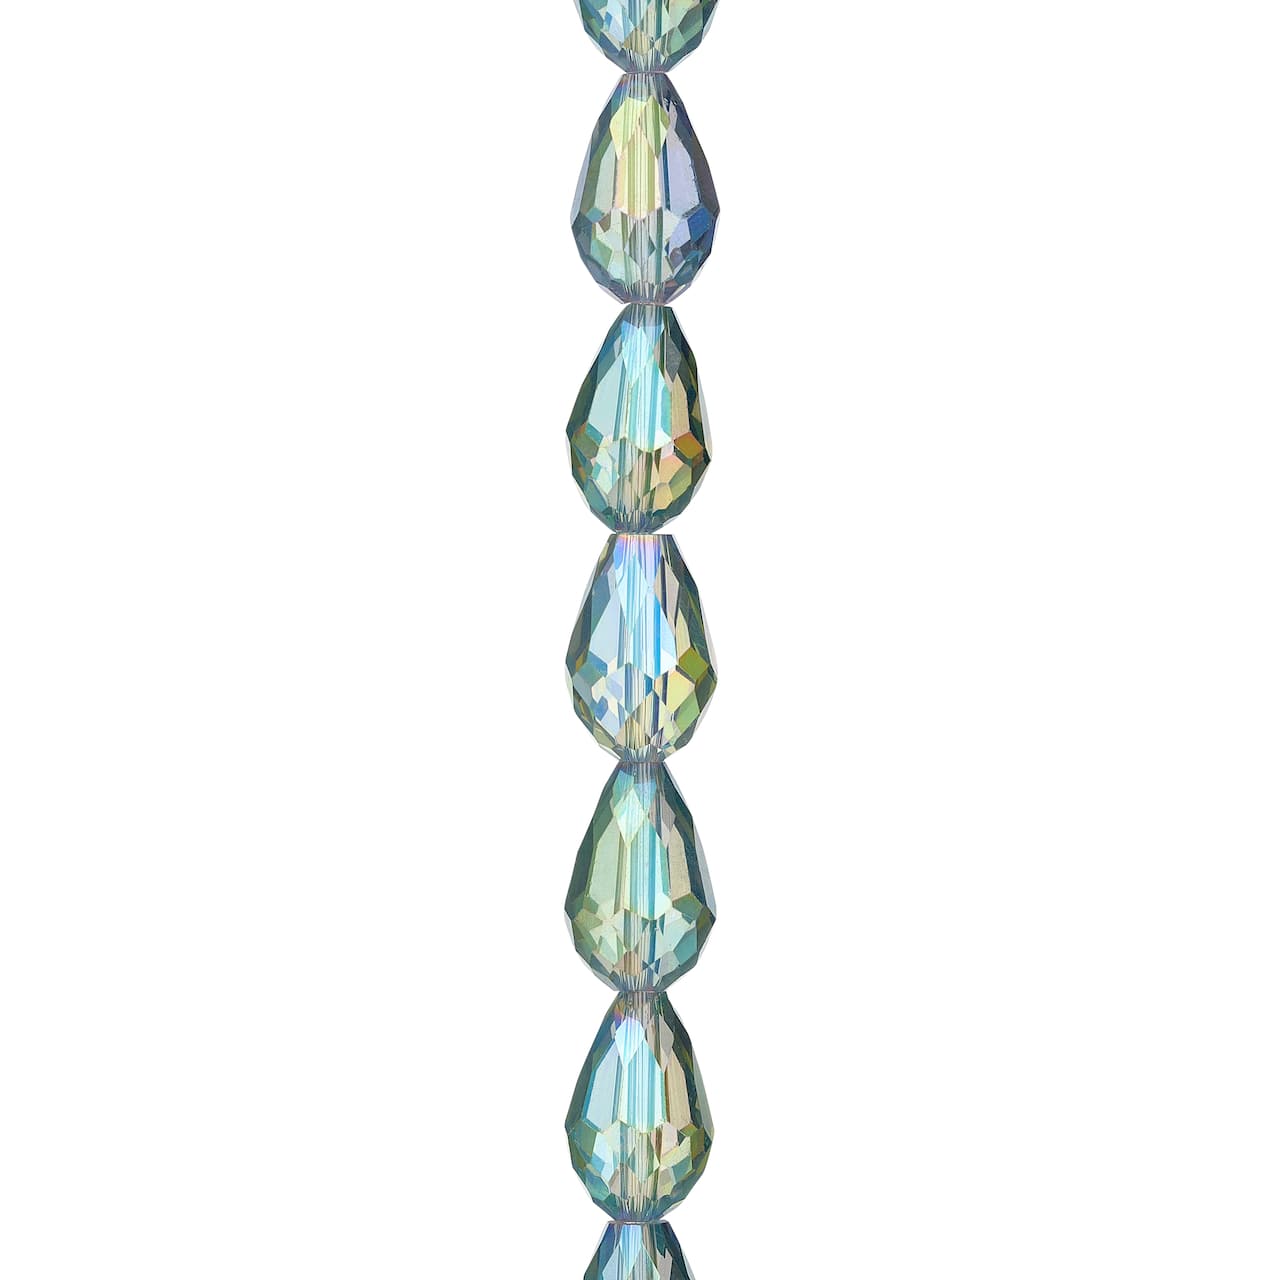 Iridescent Green Glass Teardrop Beads, 14mm by Bead Landing™